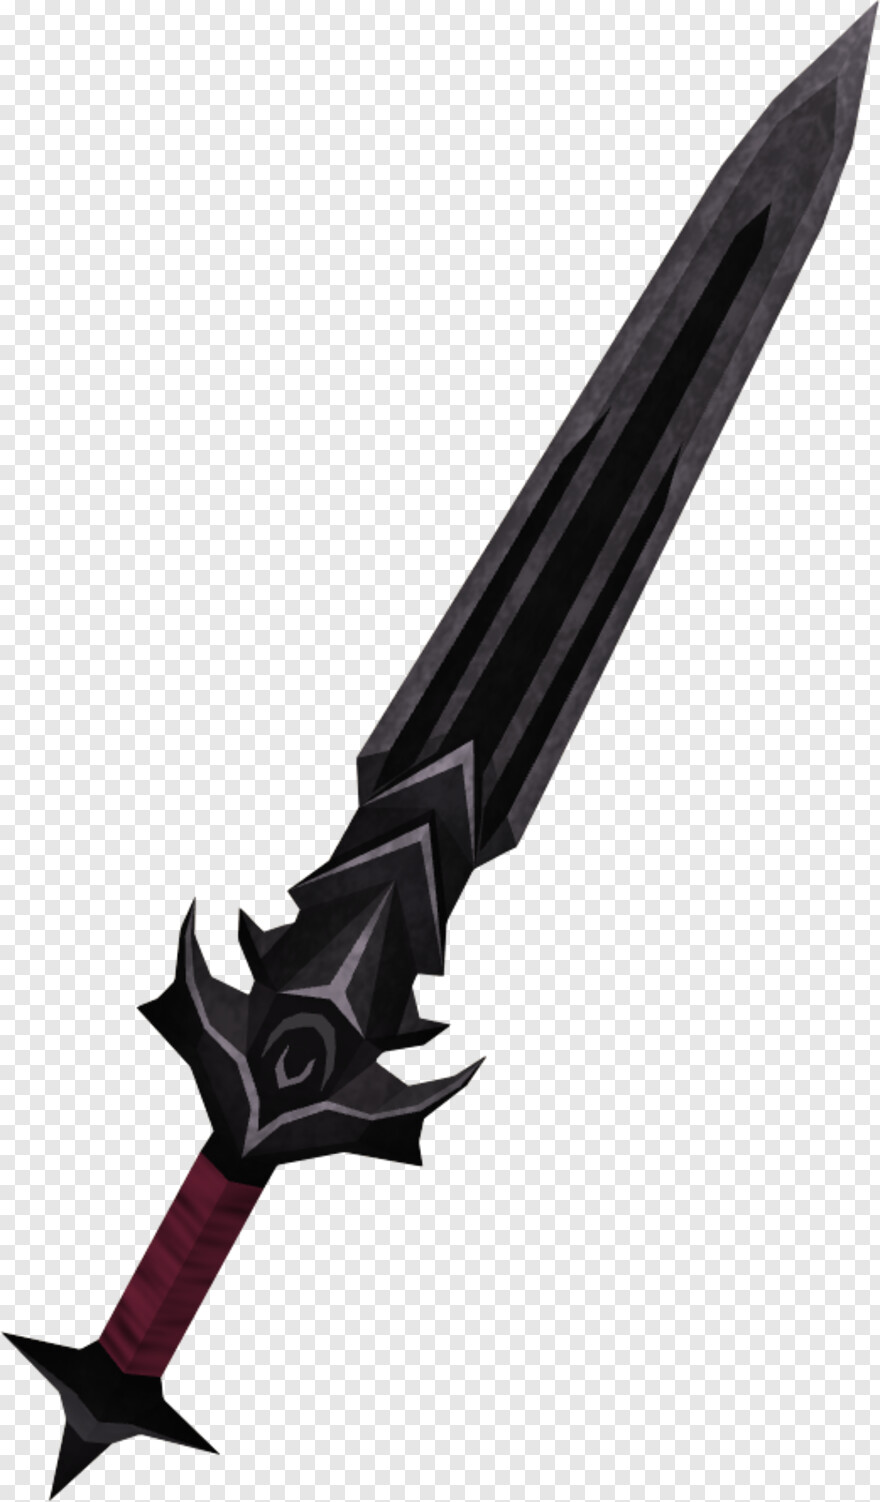 sword-vector # 607115